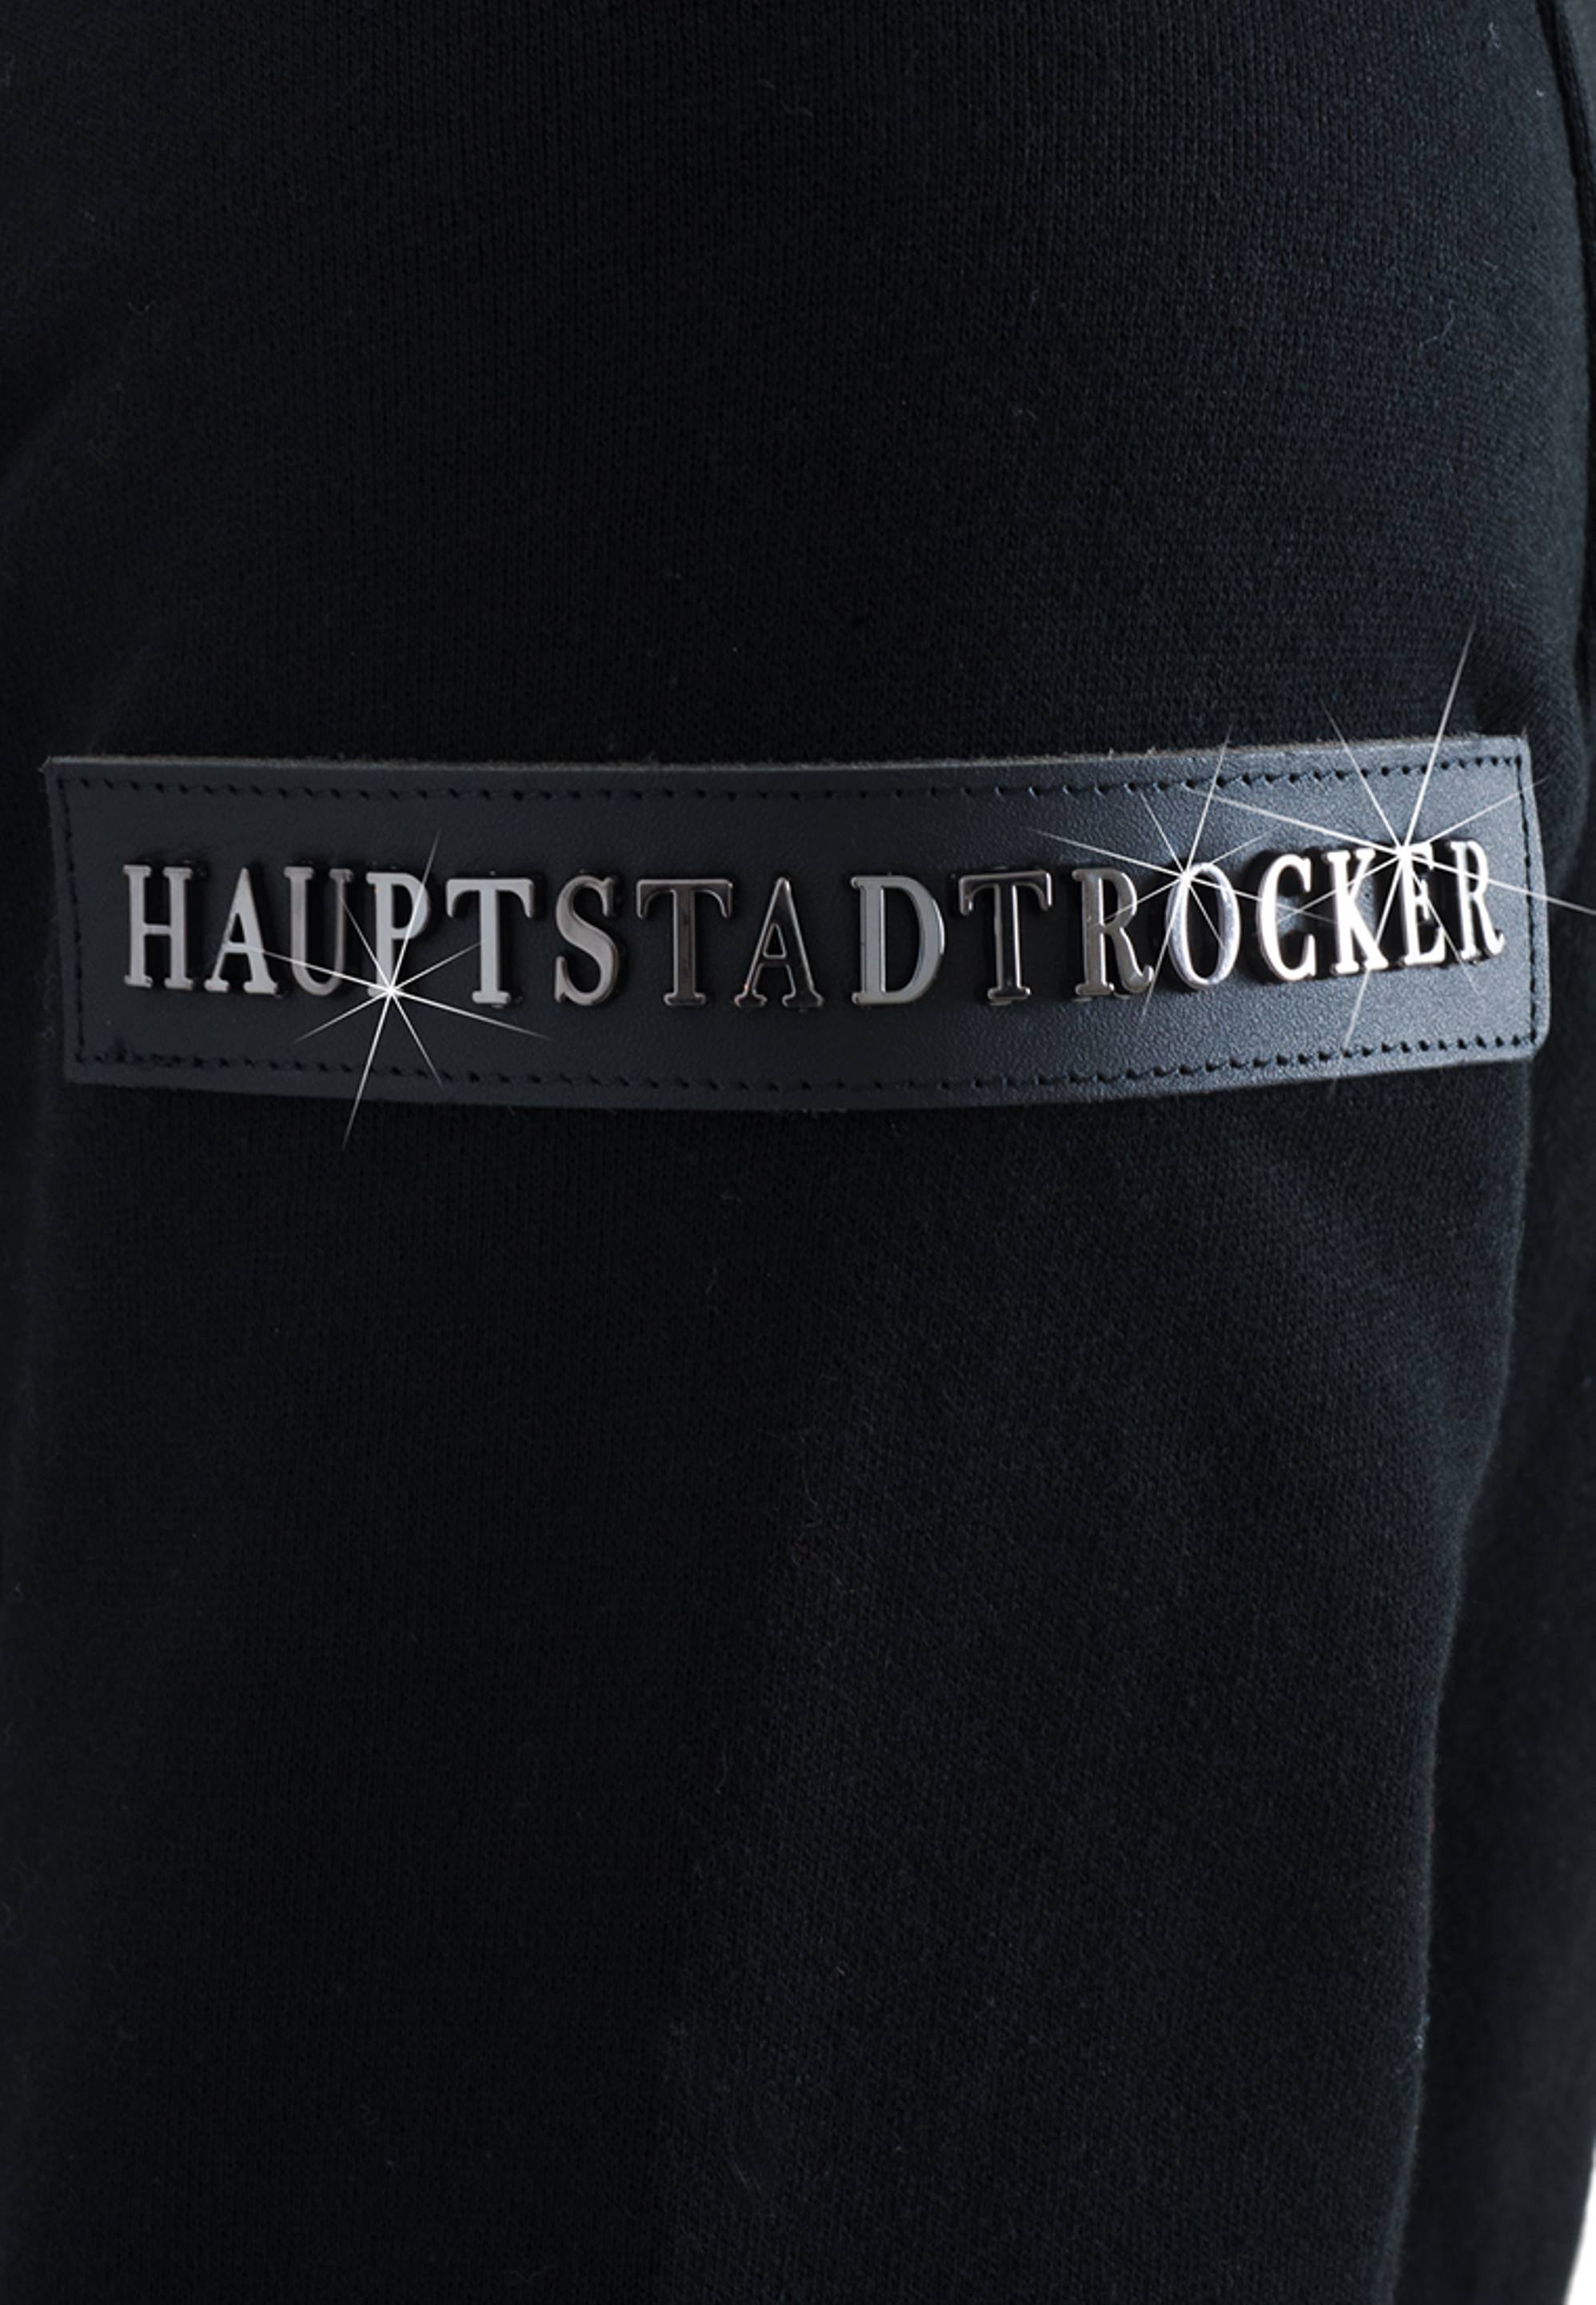 HAUPTSTADTROCKER - STAGE COLLECTION - Zip Hoodie